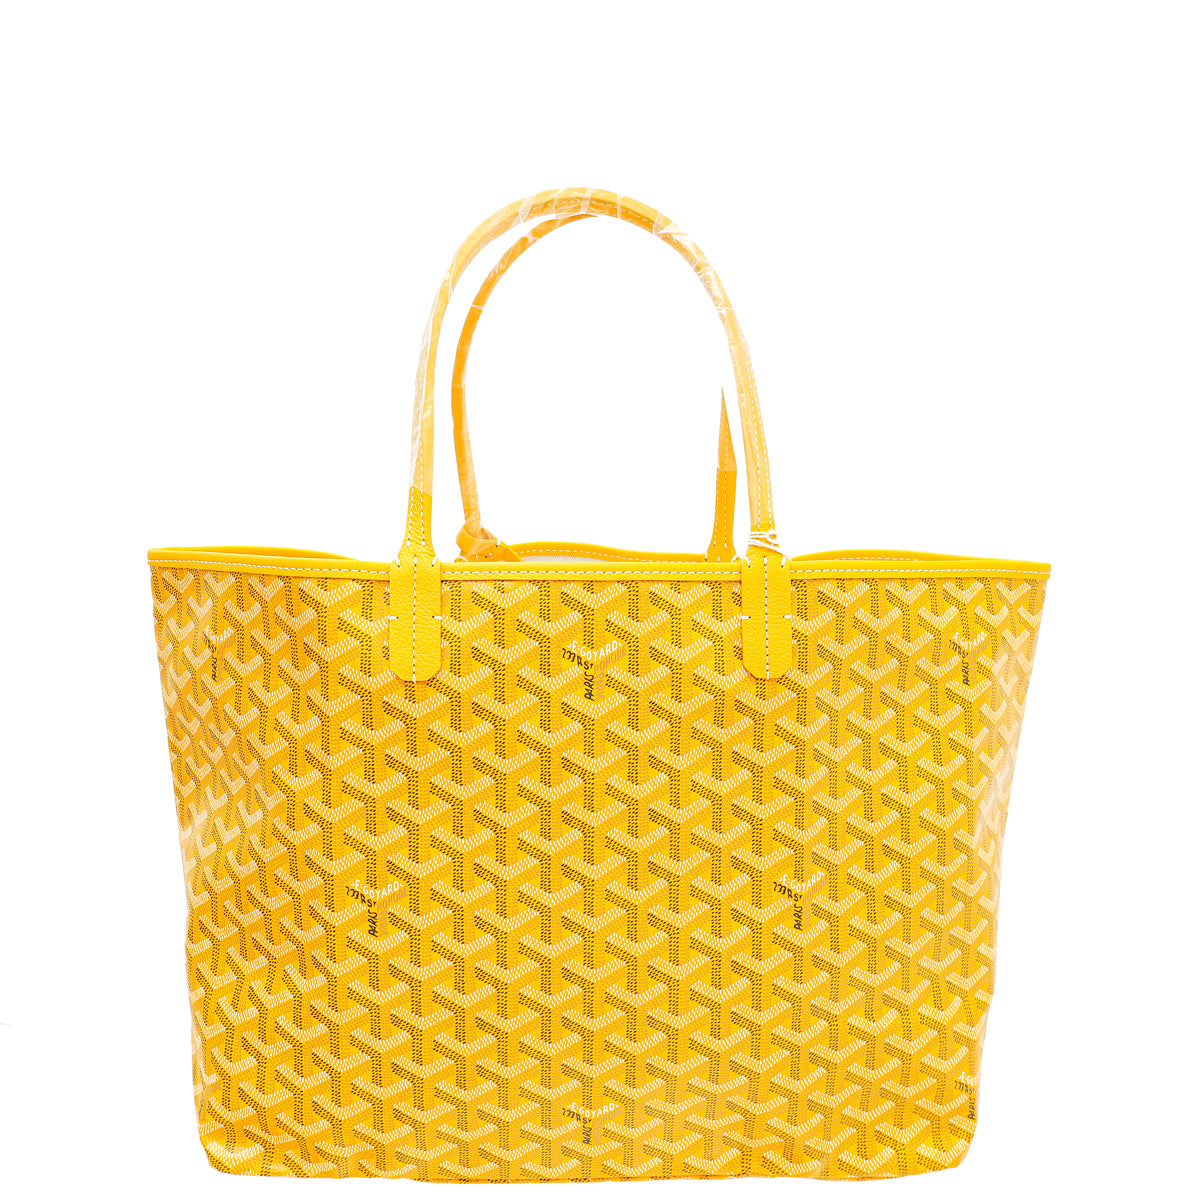 Goyard, Bags, Yellow Goyard Sac Saint Louis Pm